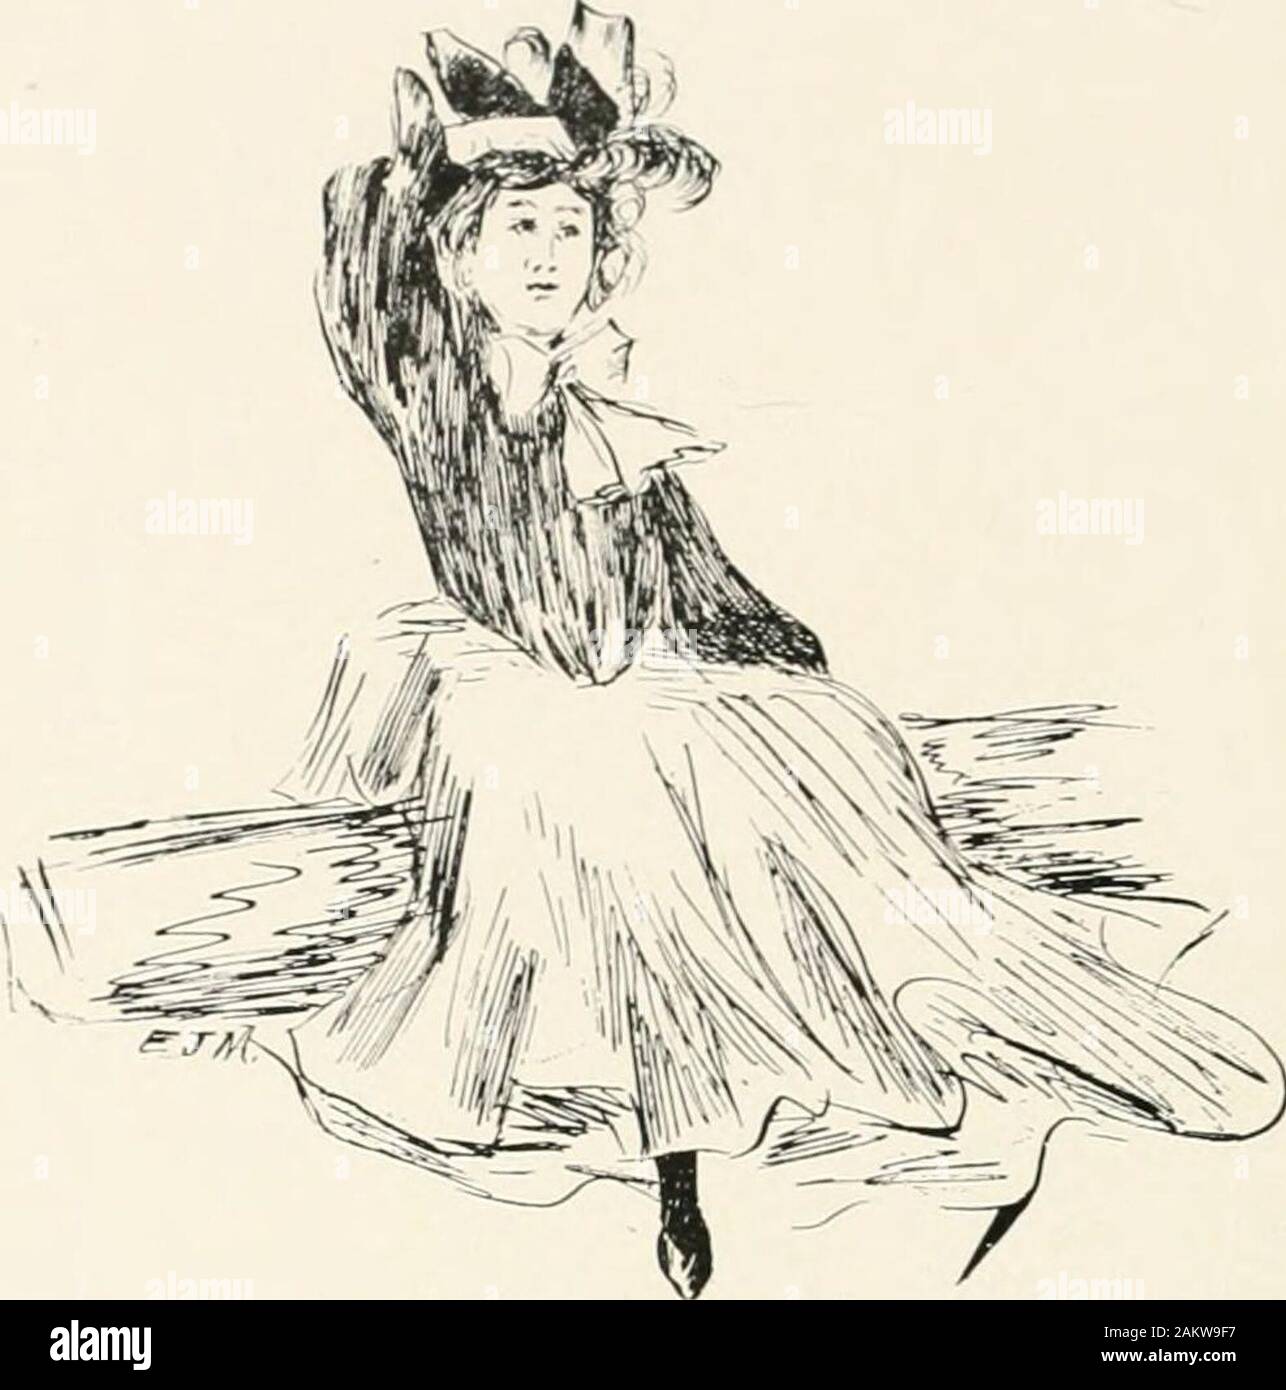 Echo Colonial, 1903 . de un marco de imagen,con rizos flaxn y resplandecientes, donde las rosas de juventud unblighted están en llamas;Venga, dulce.¿alguna vez satisfacer Dan Cupido veranos morn ?